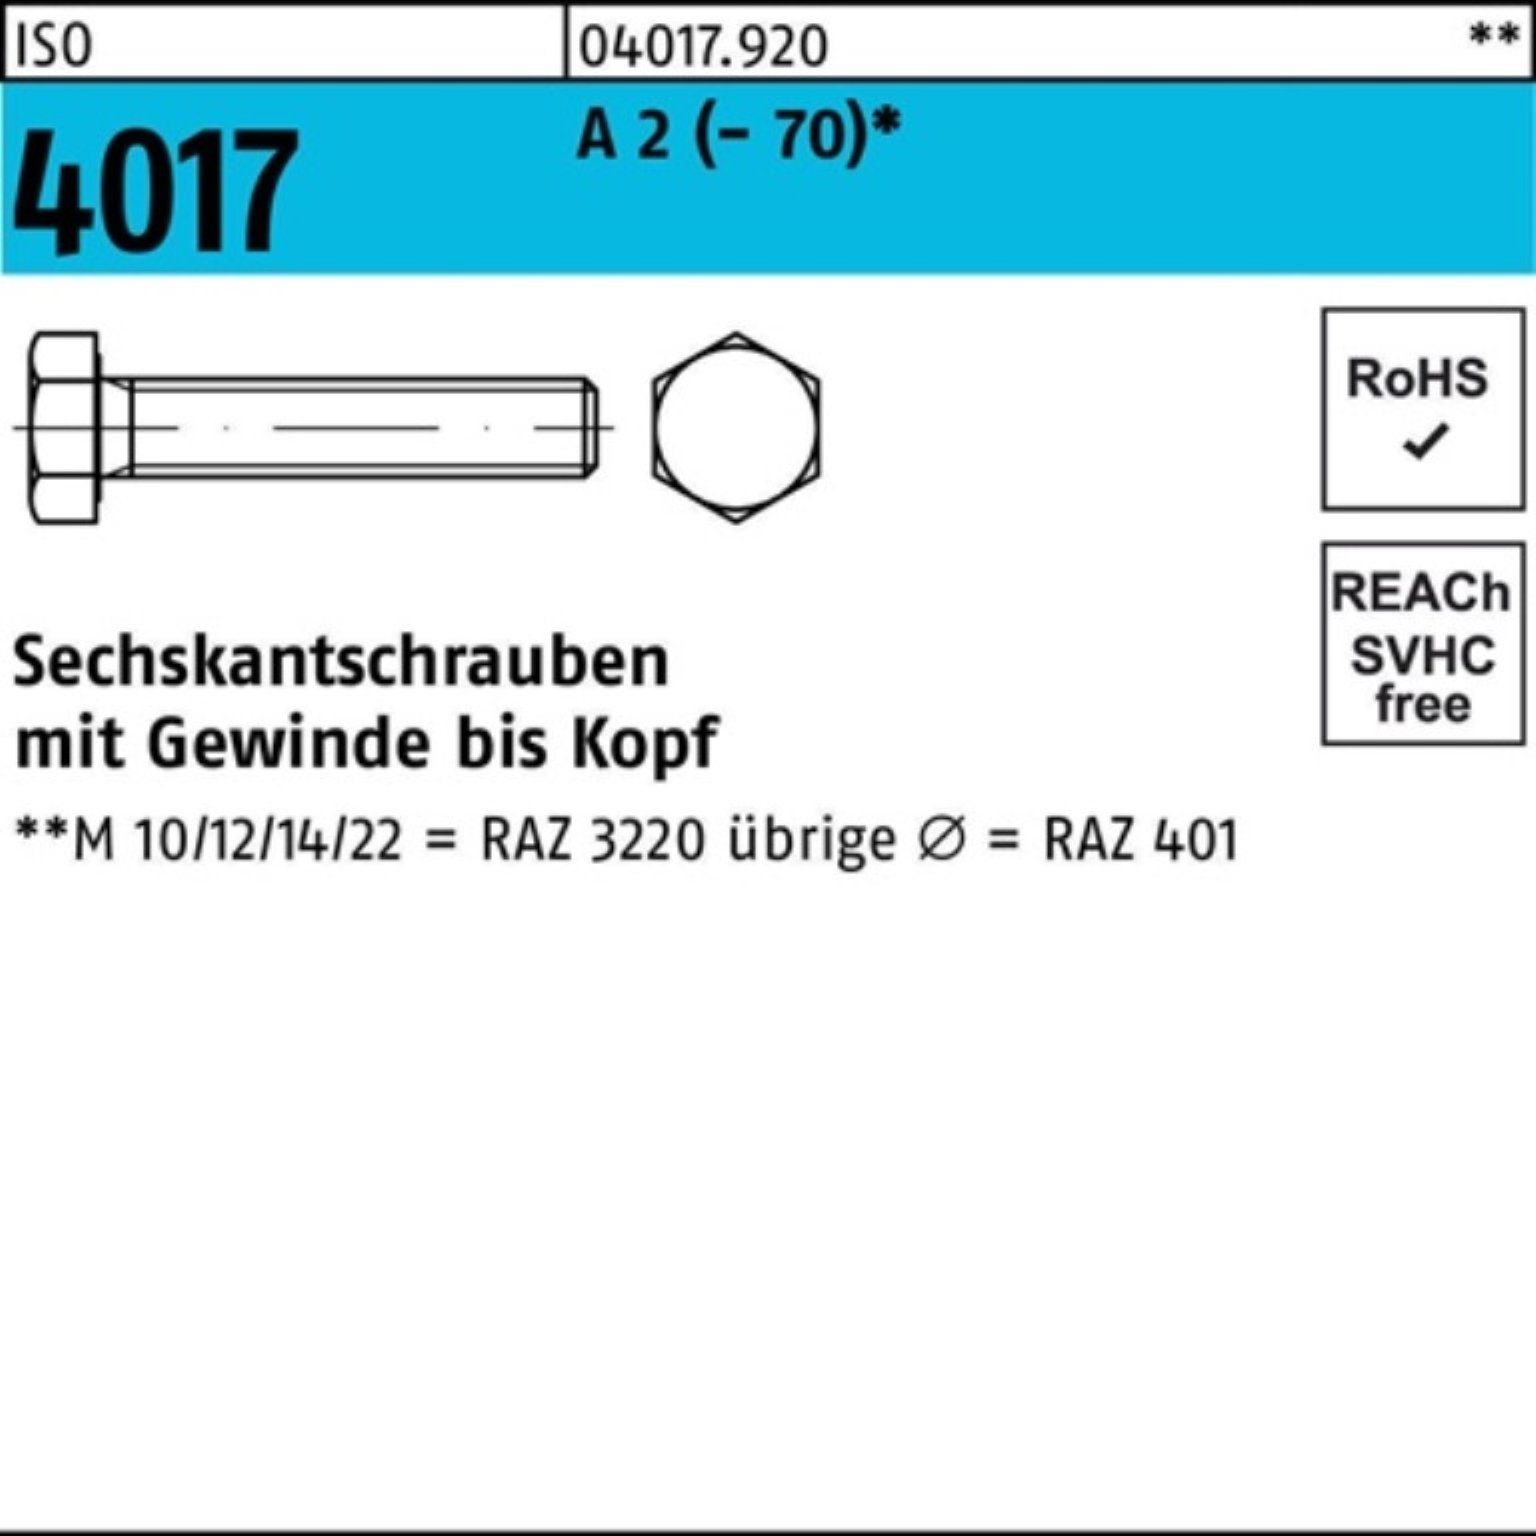 Bufab Sechskantschraube 100er Pack Sechskantschraube ISO 4017 A Stück 100 (70) VG M10x 16 2